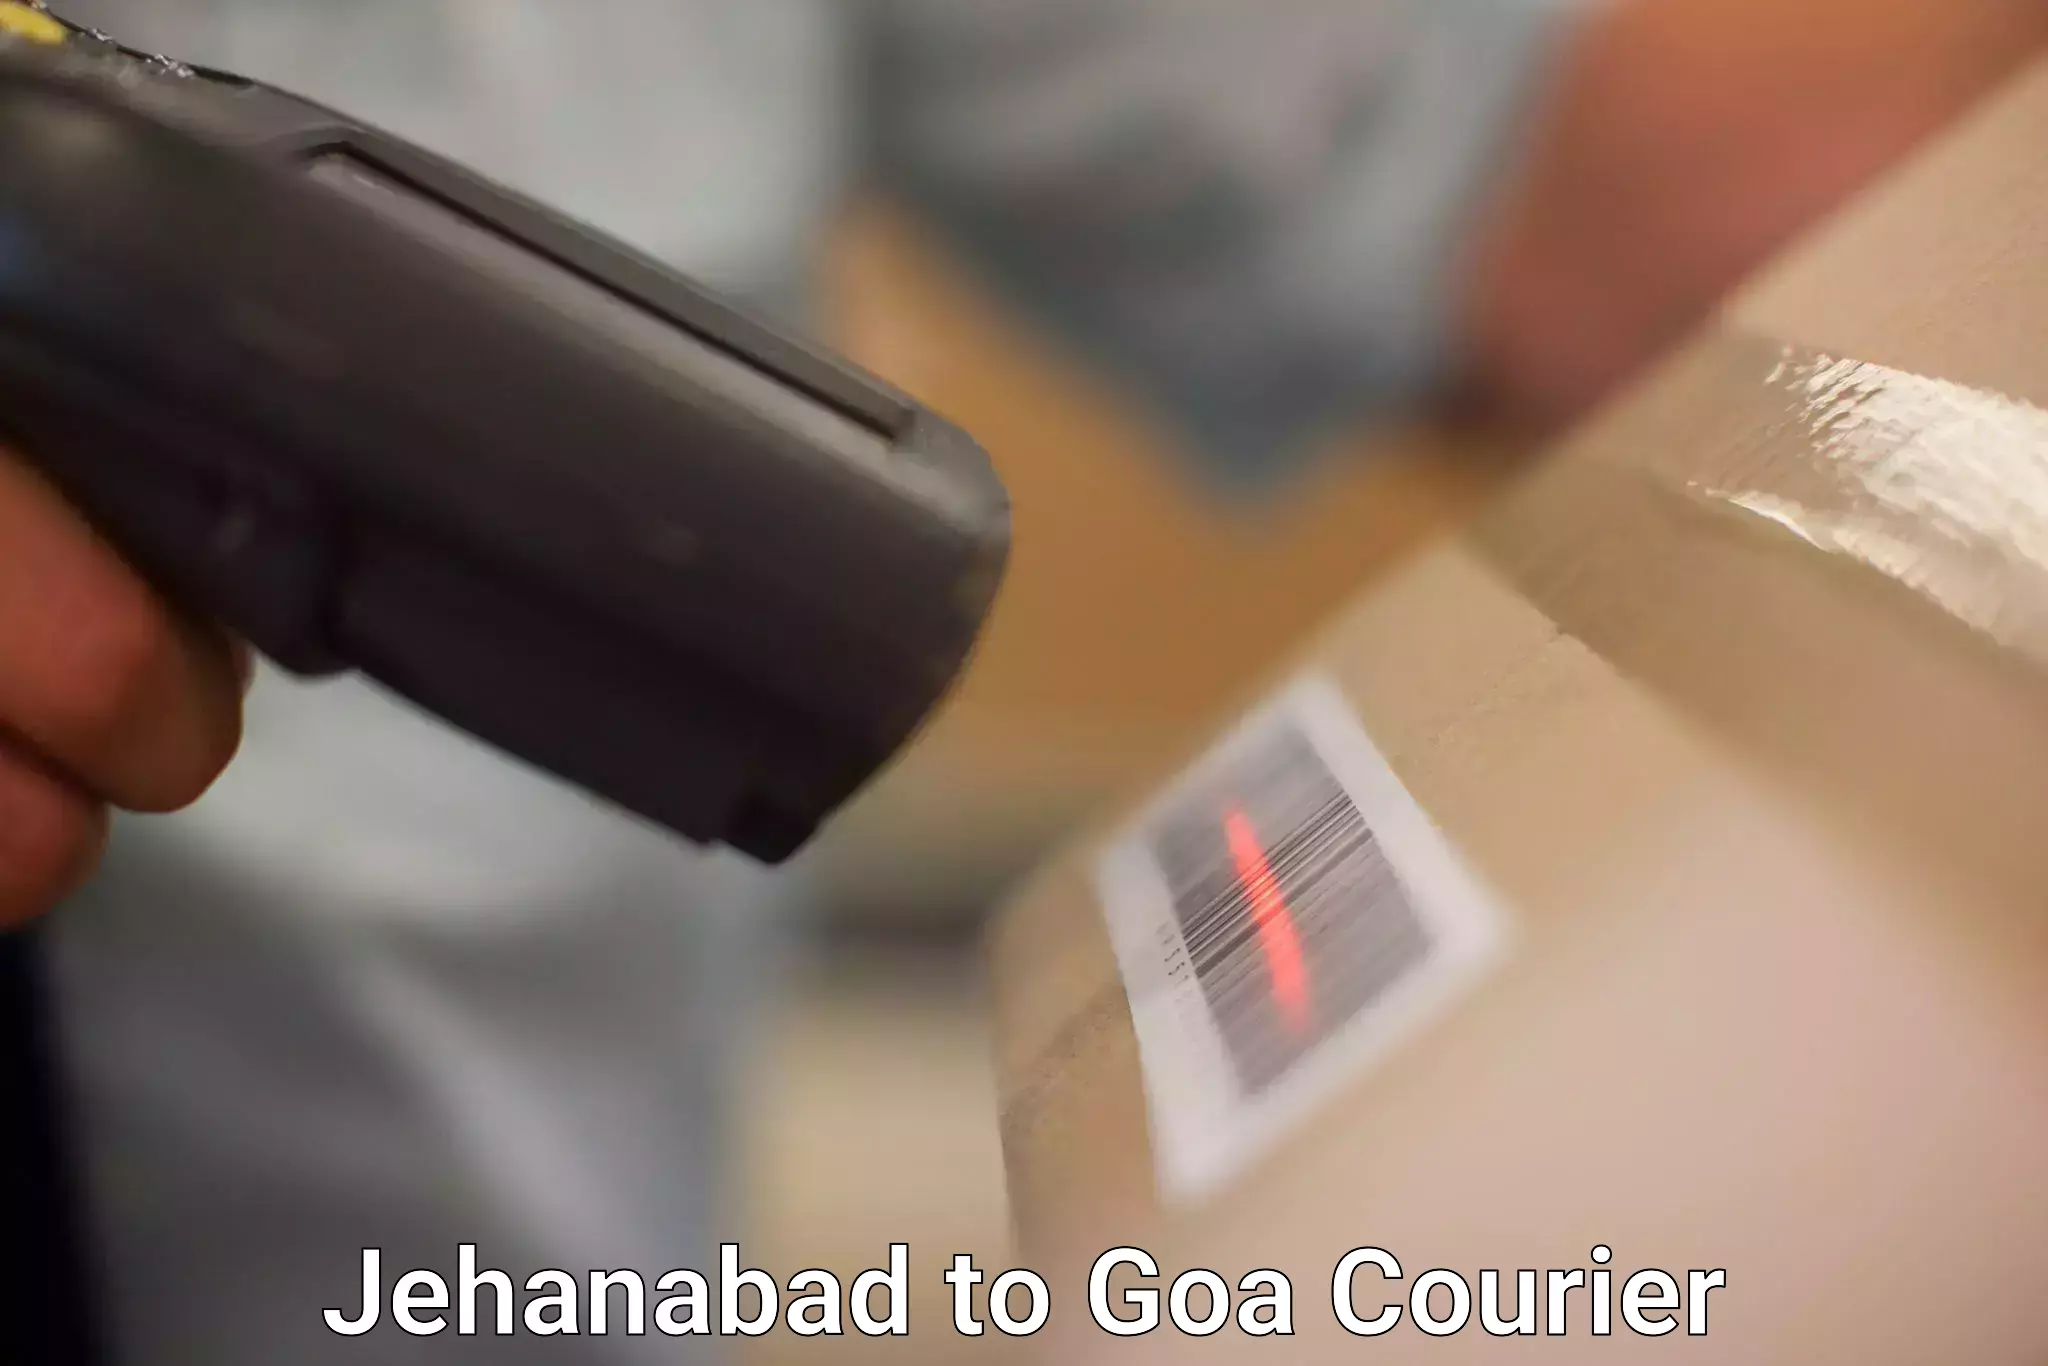 Courier service comparison Jehanabad to Mormugao Port